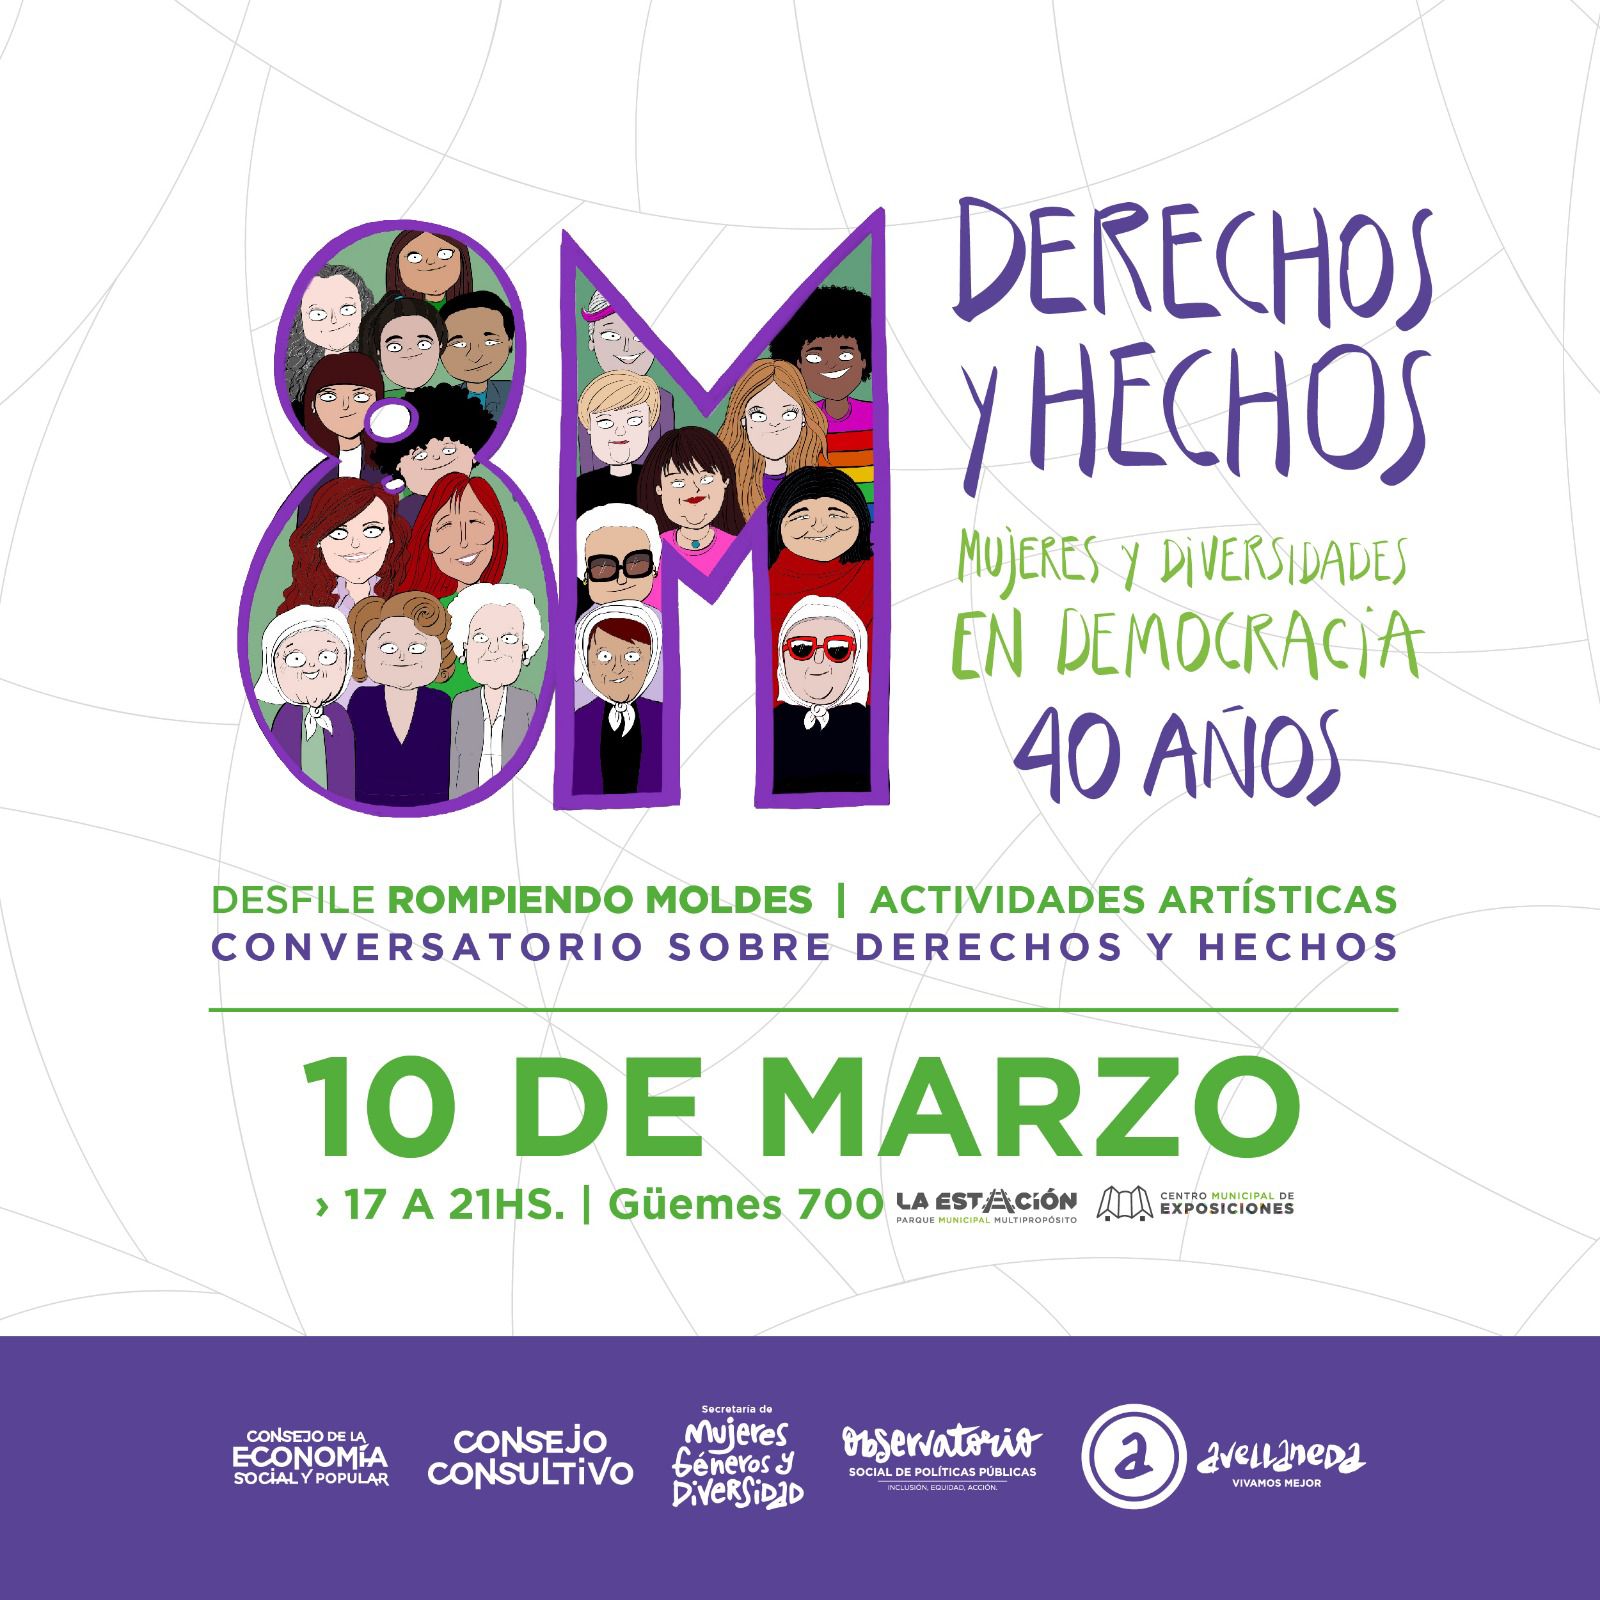 JORNADA #8M: DERECHOS Y HECHOS 💚 Mujeres y Diversidades en Democracia 40 años✊🏼